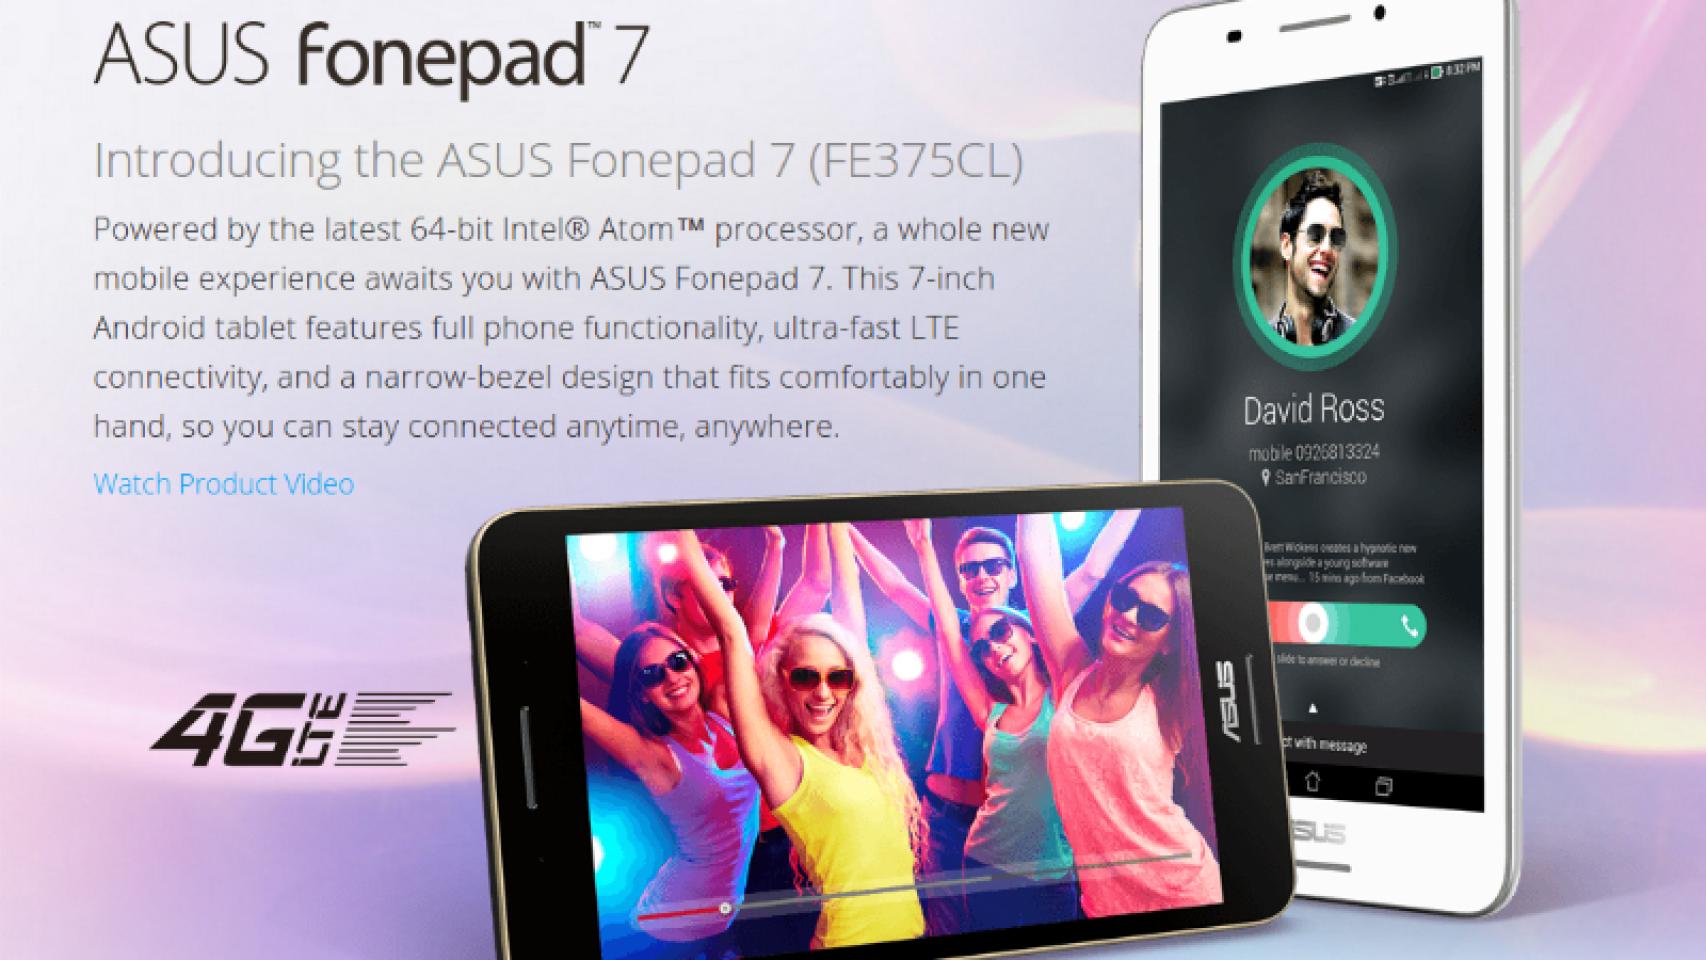 Nueva Asus Fonepad 7 con procesador Intel Z3530, 2GB de RAM y Android 5.0 Lollipop